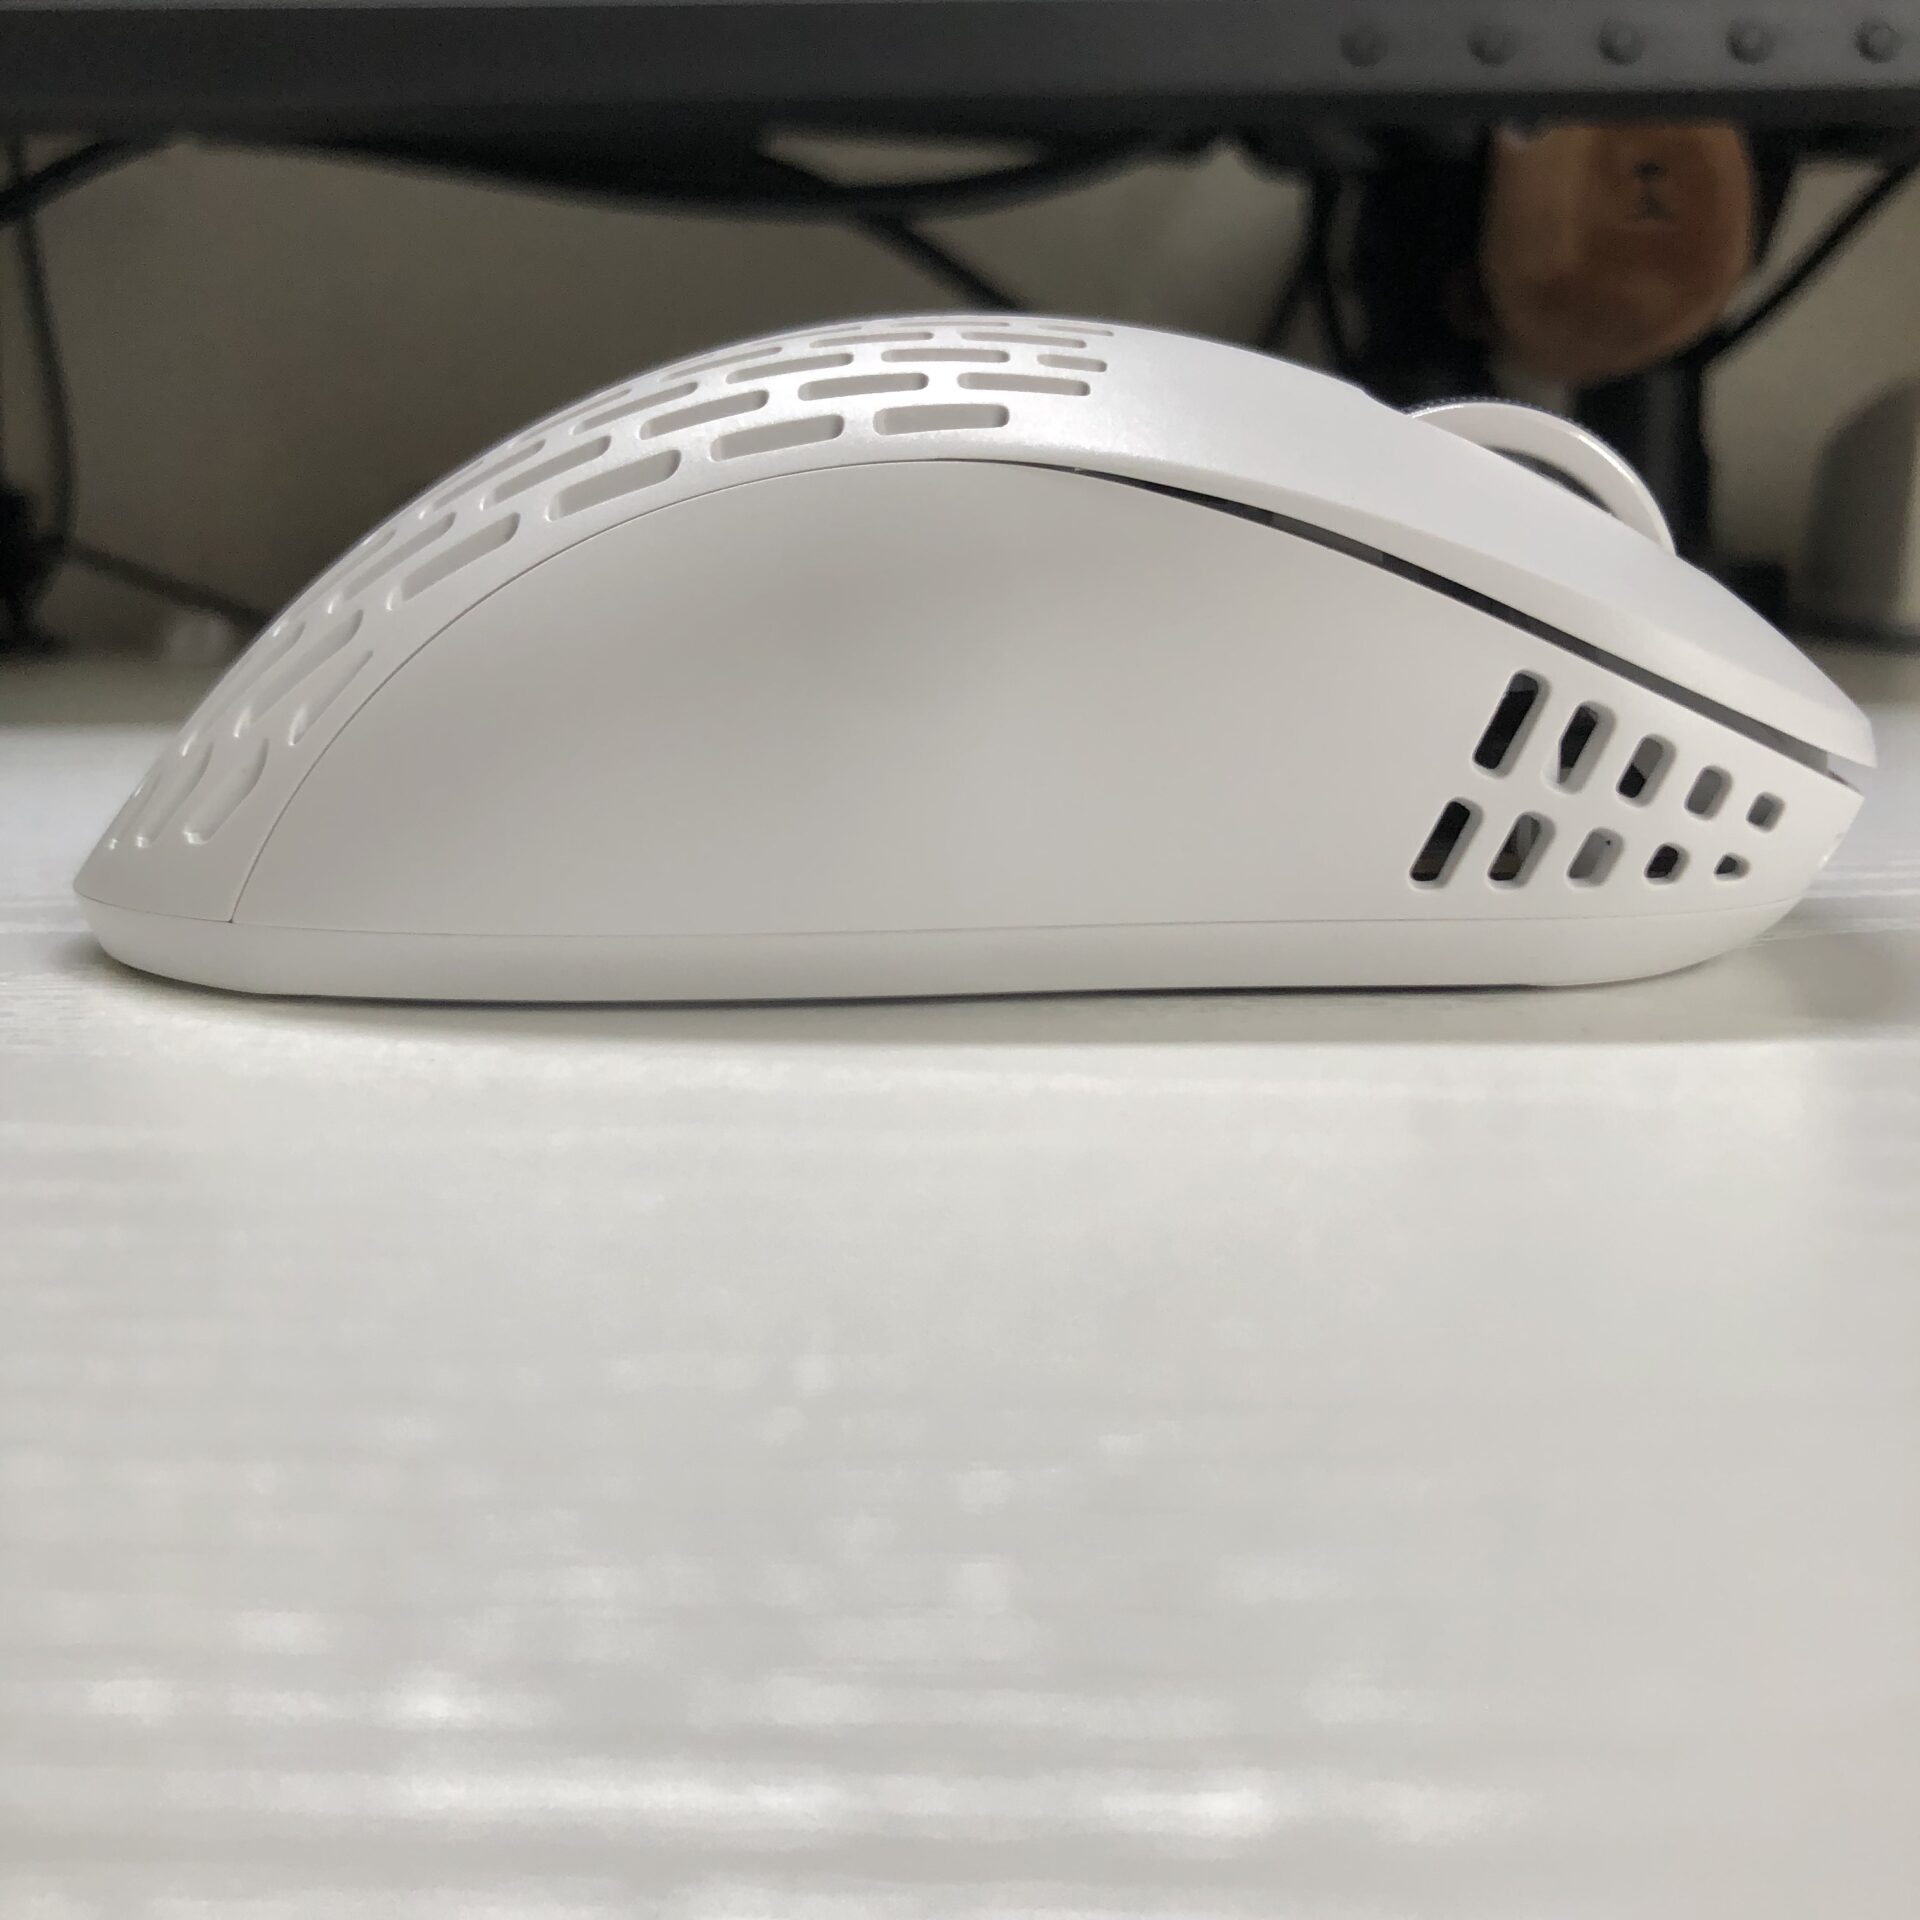 xlite v2 mini wireless mouse rightside